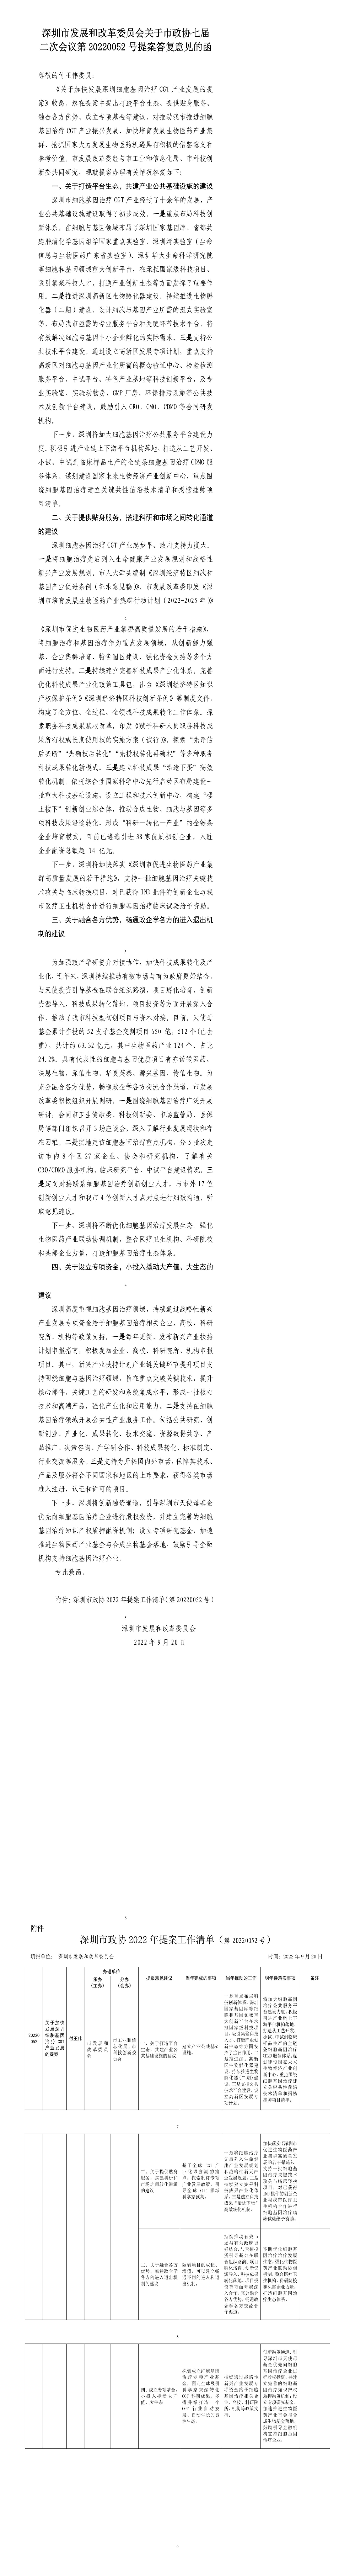 深圳市发展和改革委员会关于市政协七届二次会议第20220052号提案答复意见的函.jpg